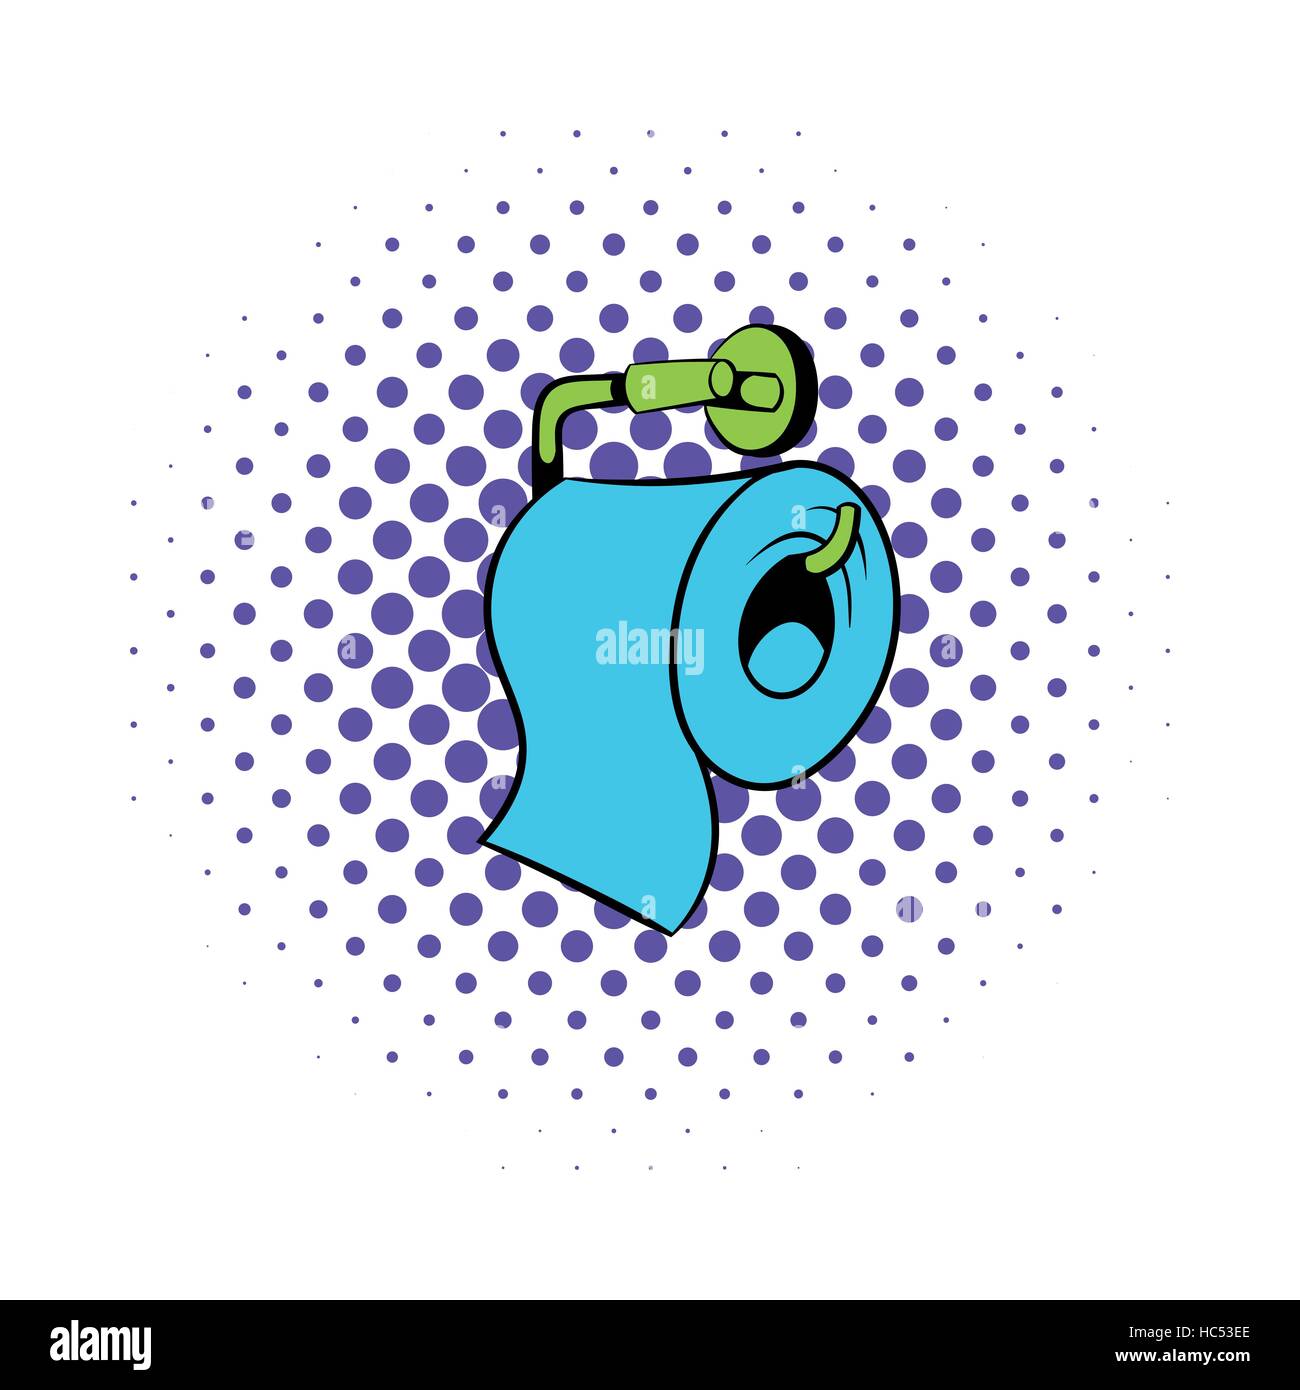 Toilet paper icon, comics style Stock Vector